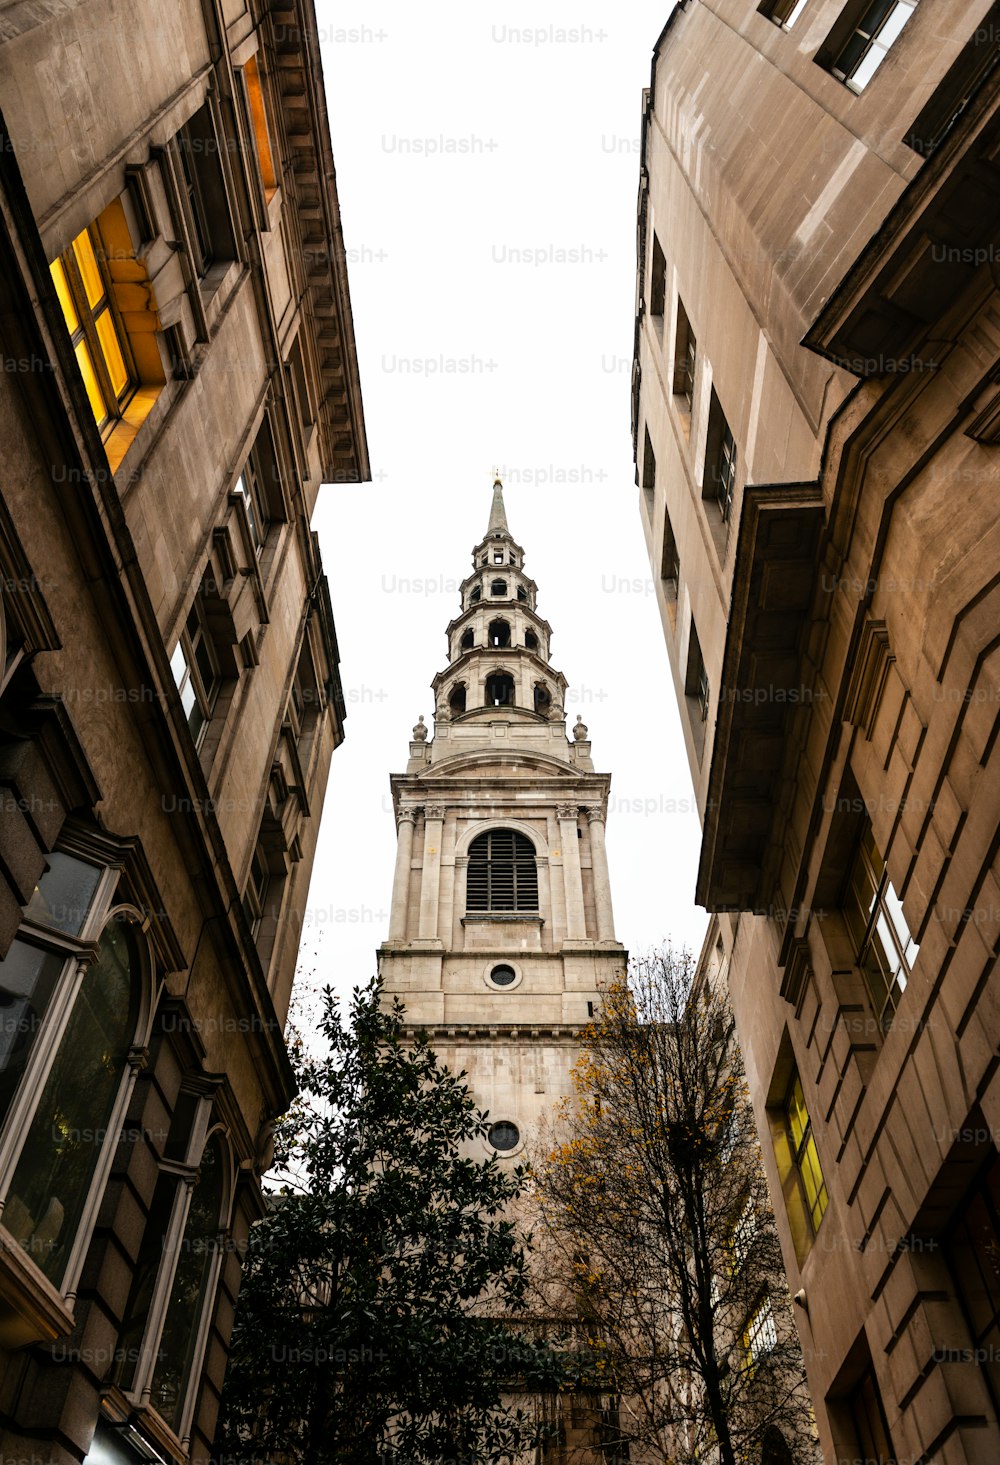 Torre da Igreja de Santa Noiva, uma das igrejas mais antigas de Londres, vista através de uma rua estreita.